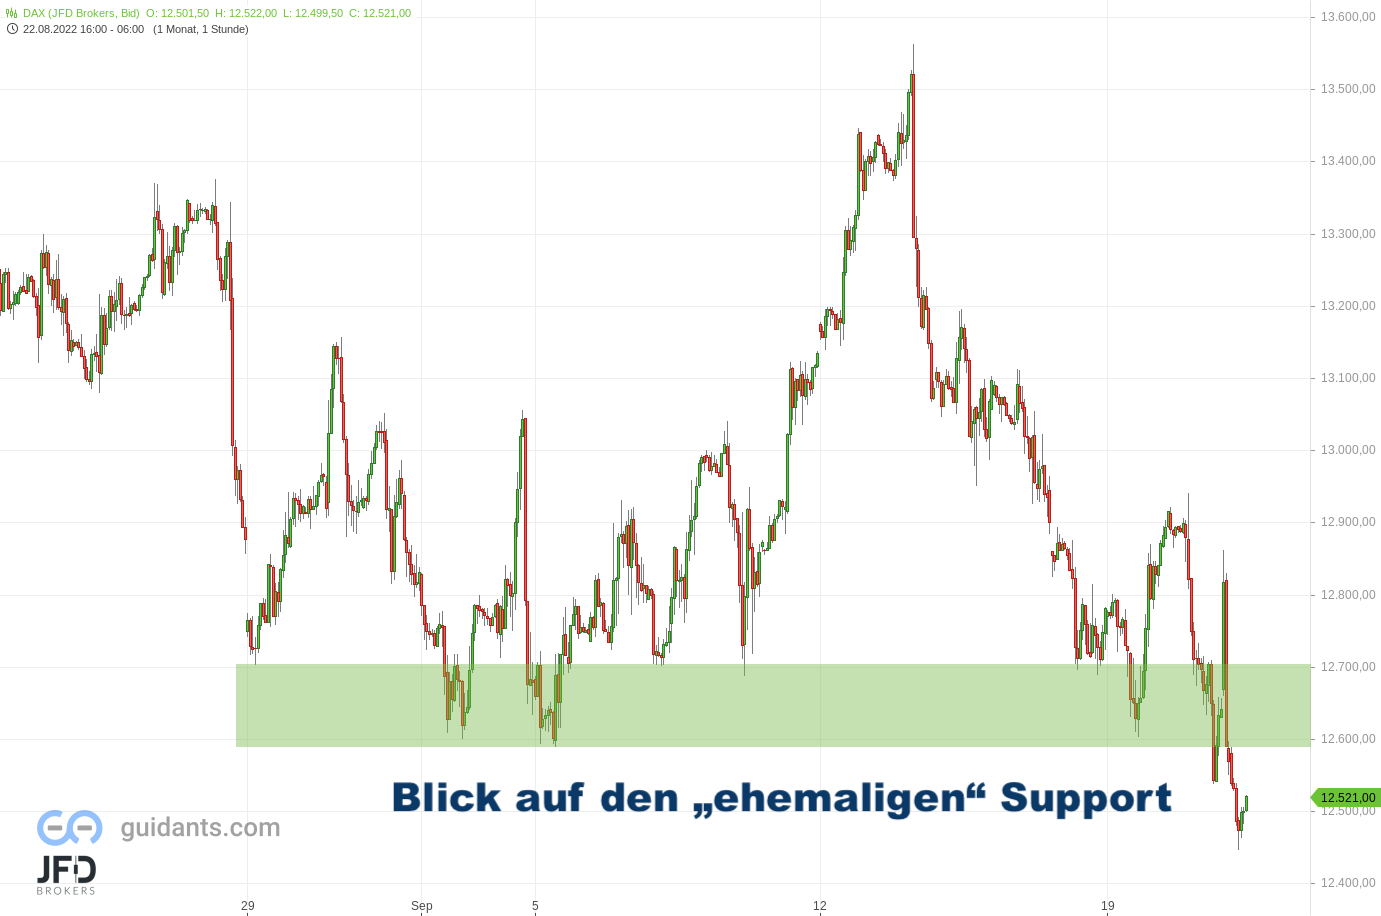 DAX-Handelsstart-an-gleicher-Schwelle-erwartet-Kursmuster-erkannt-zum-23-09-2022-Kommentar-JFD-Brokers-GodmodeTrader.de-1